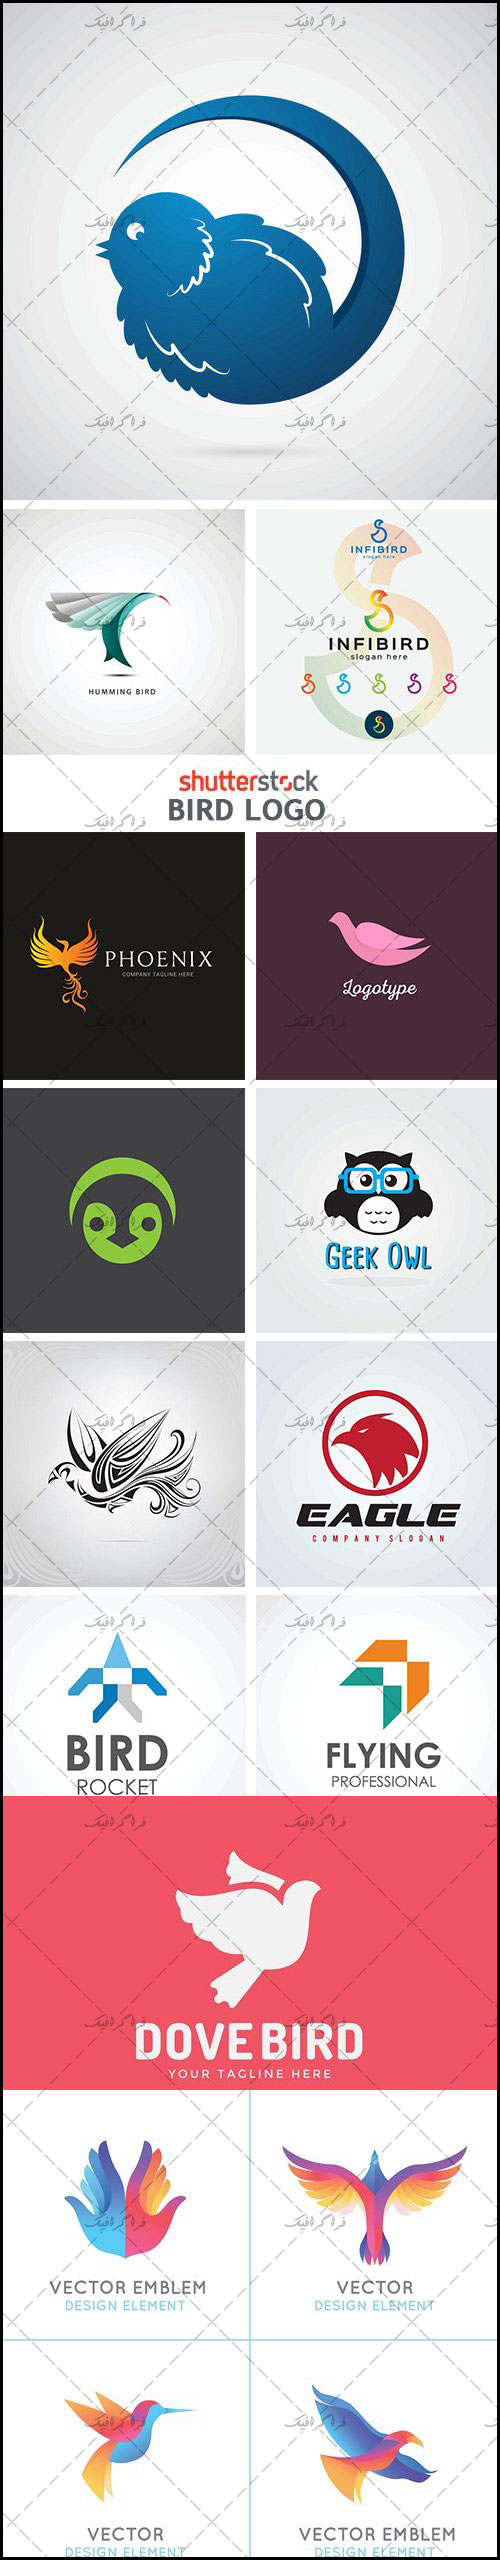 دانلود لوگو های پرنده - Bird Logos